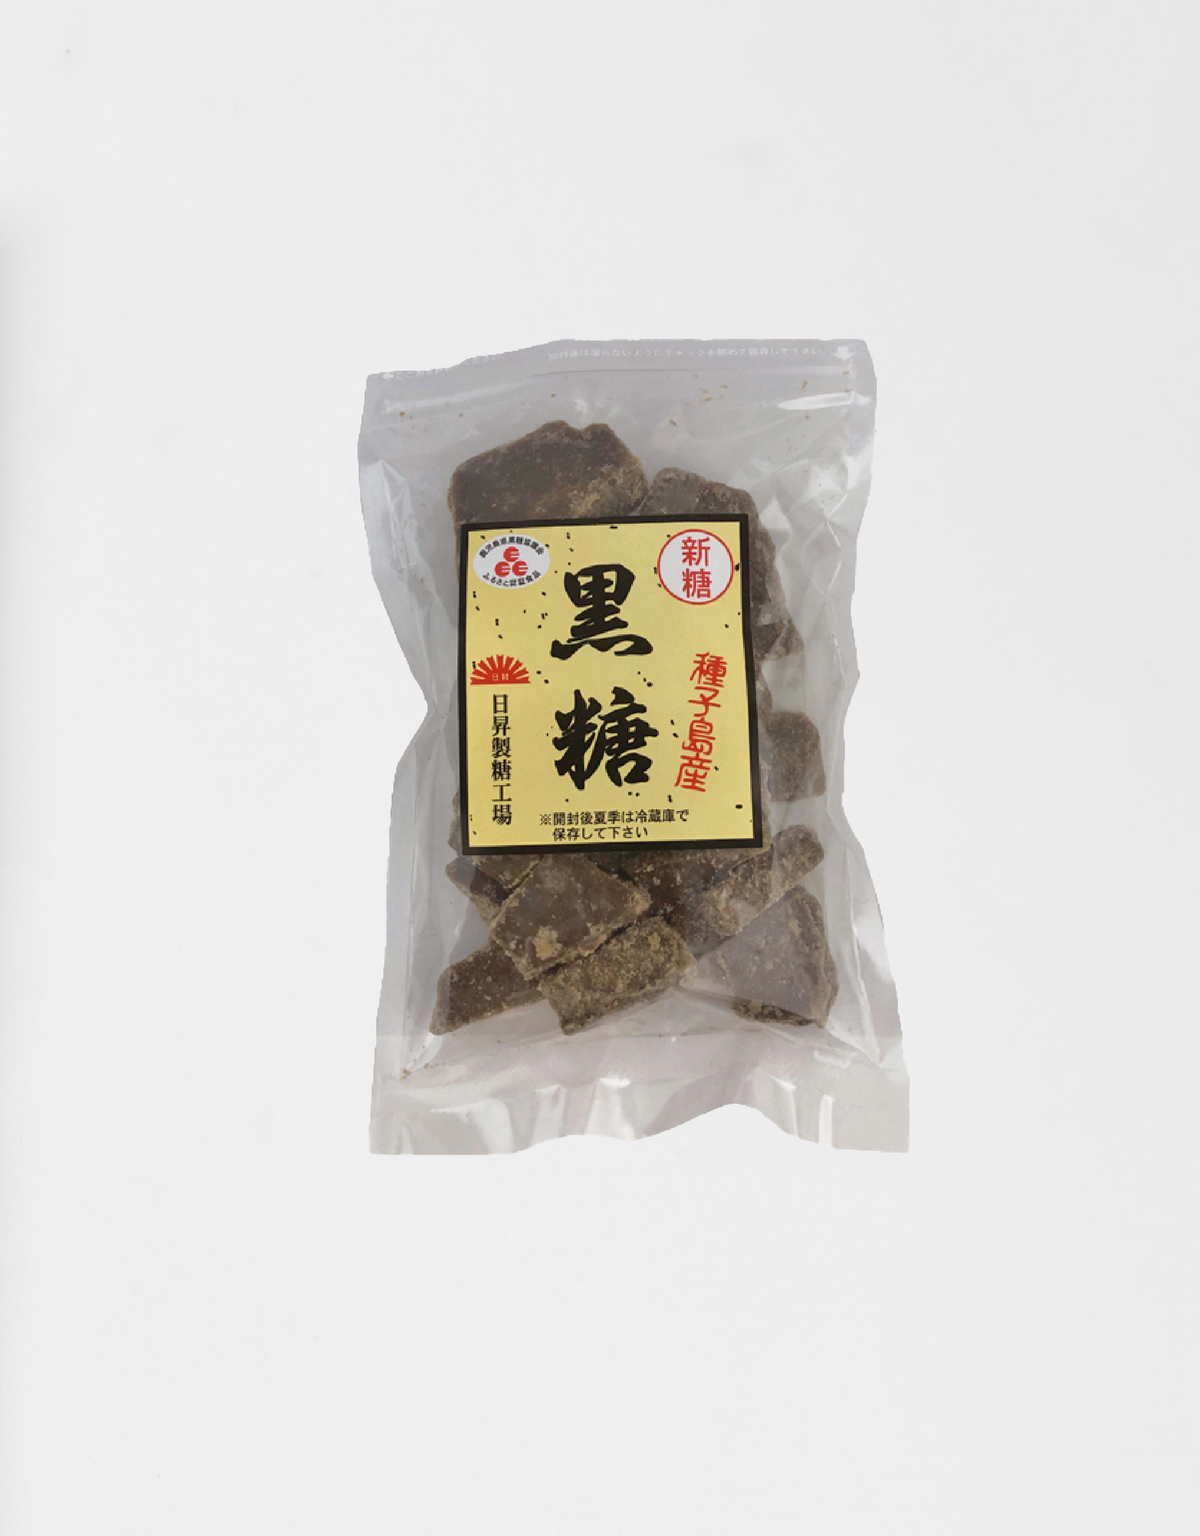 [New sugar] Natural blessing Tanegashima specialty brown sugar [100% pure]